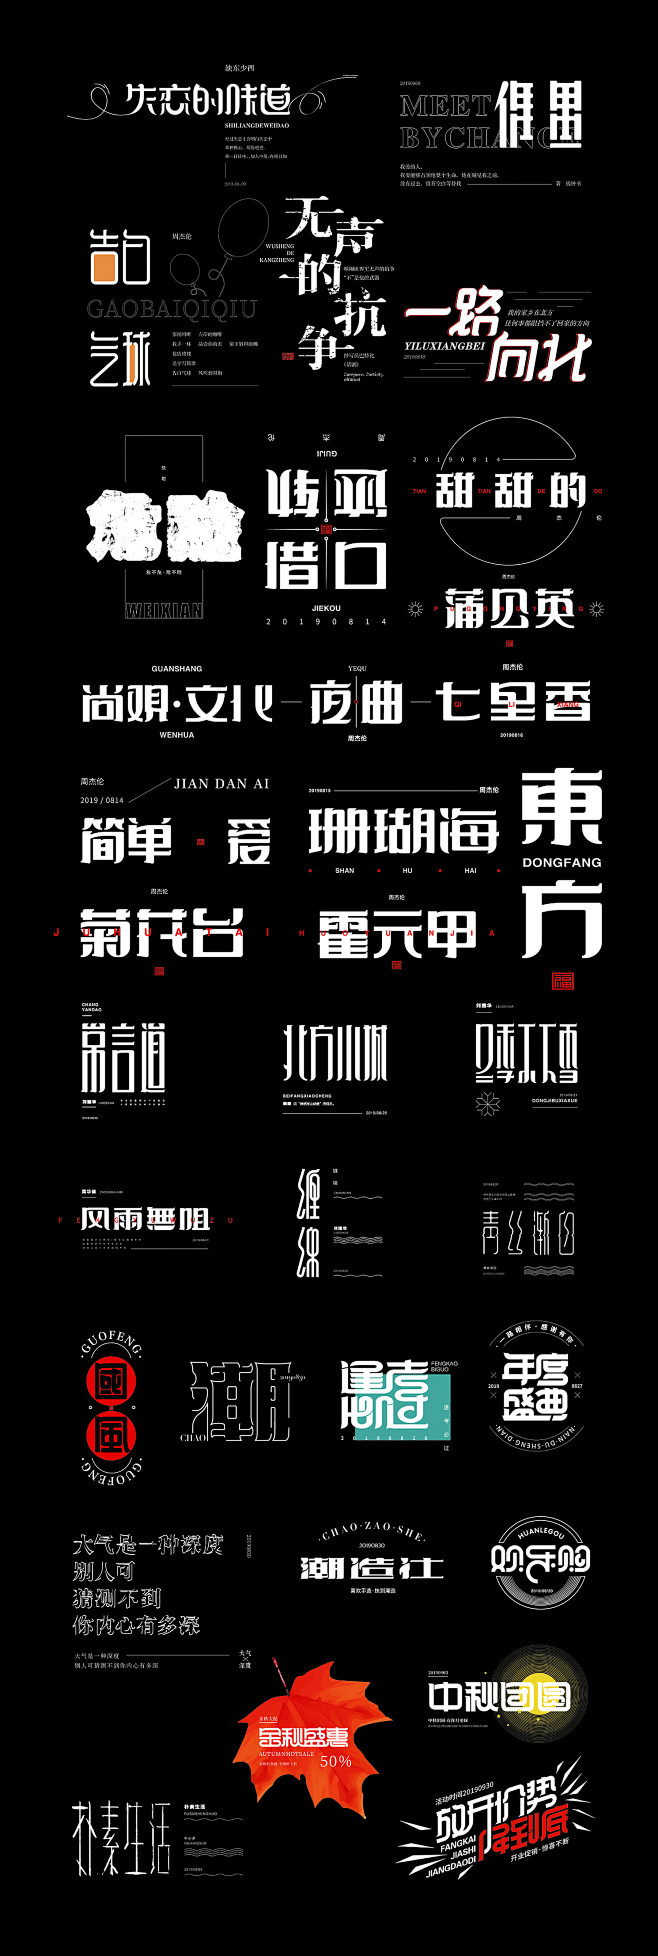 歌曲名称字体设计-UI中国用户体验设计平...